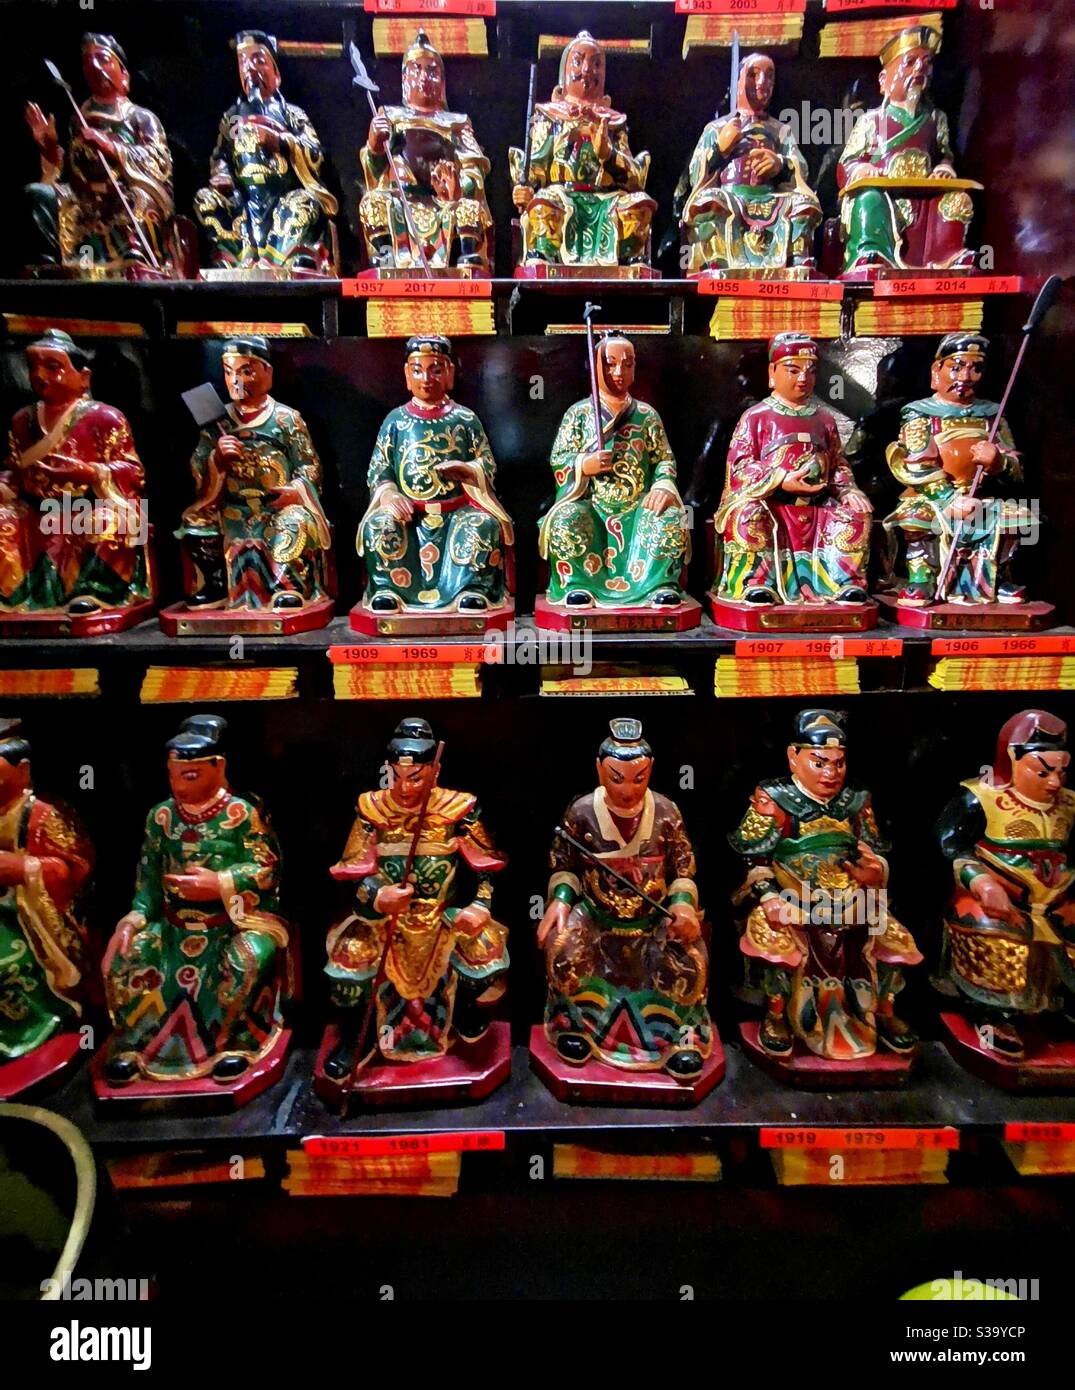 Wall of deities in the beautiful Hung Shing temple in Ap Lei Chau, Hong Kong. Stock Photo